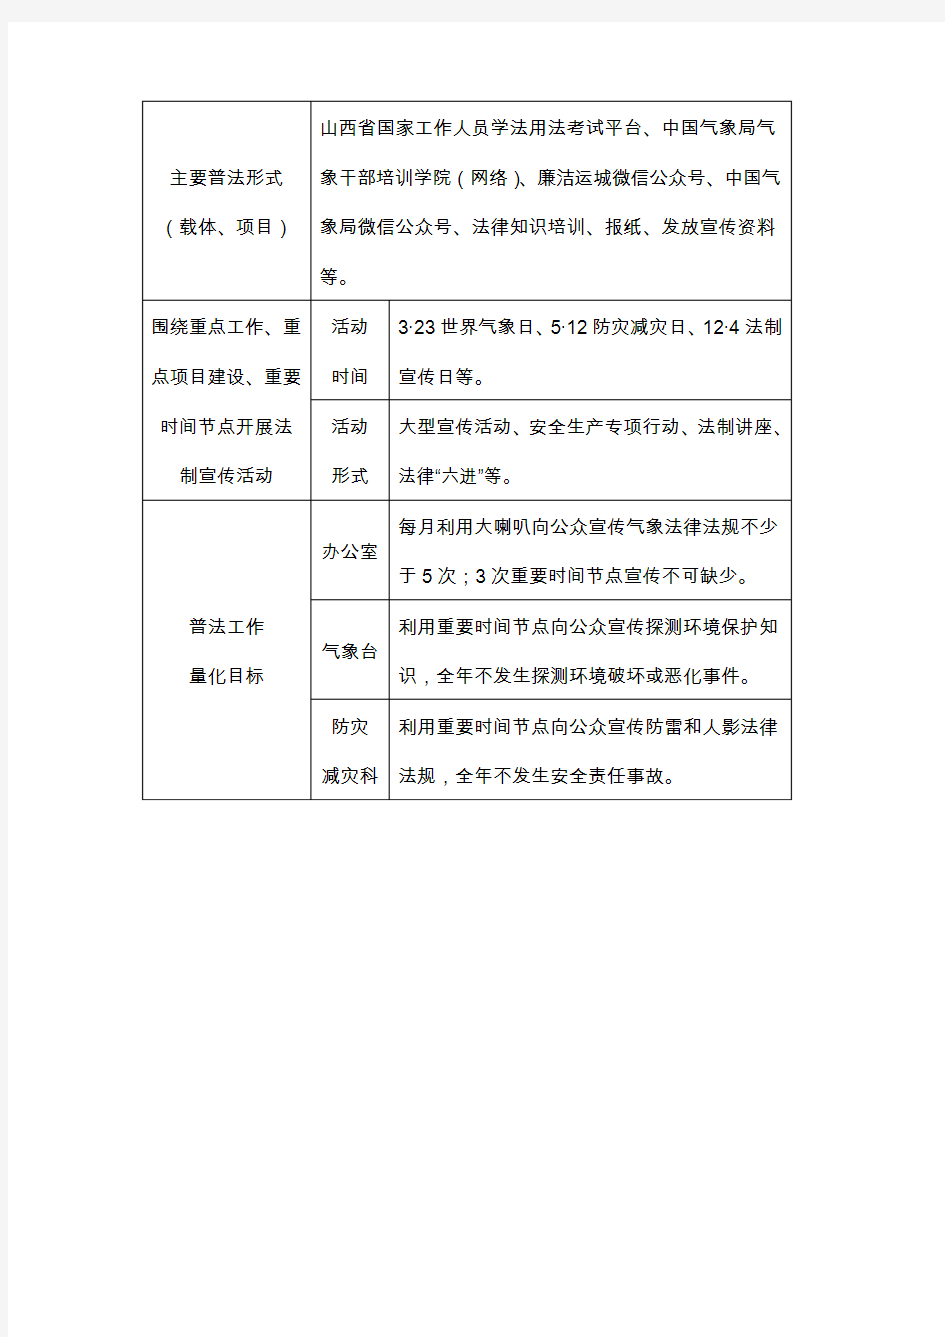 万荣县气象局2018年普法责任清单